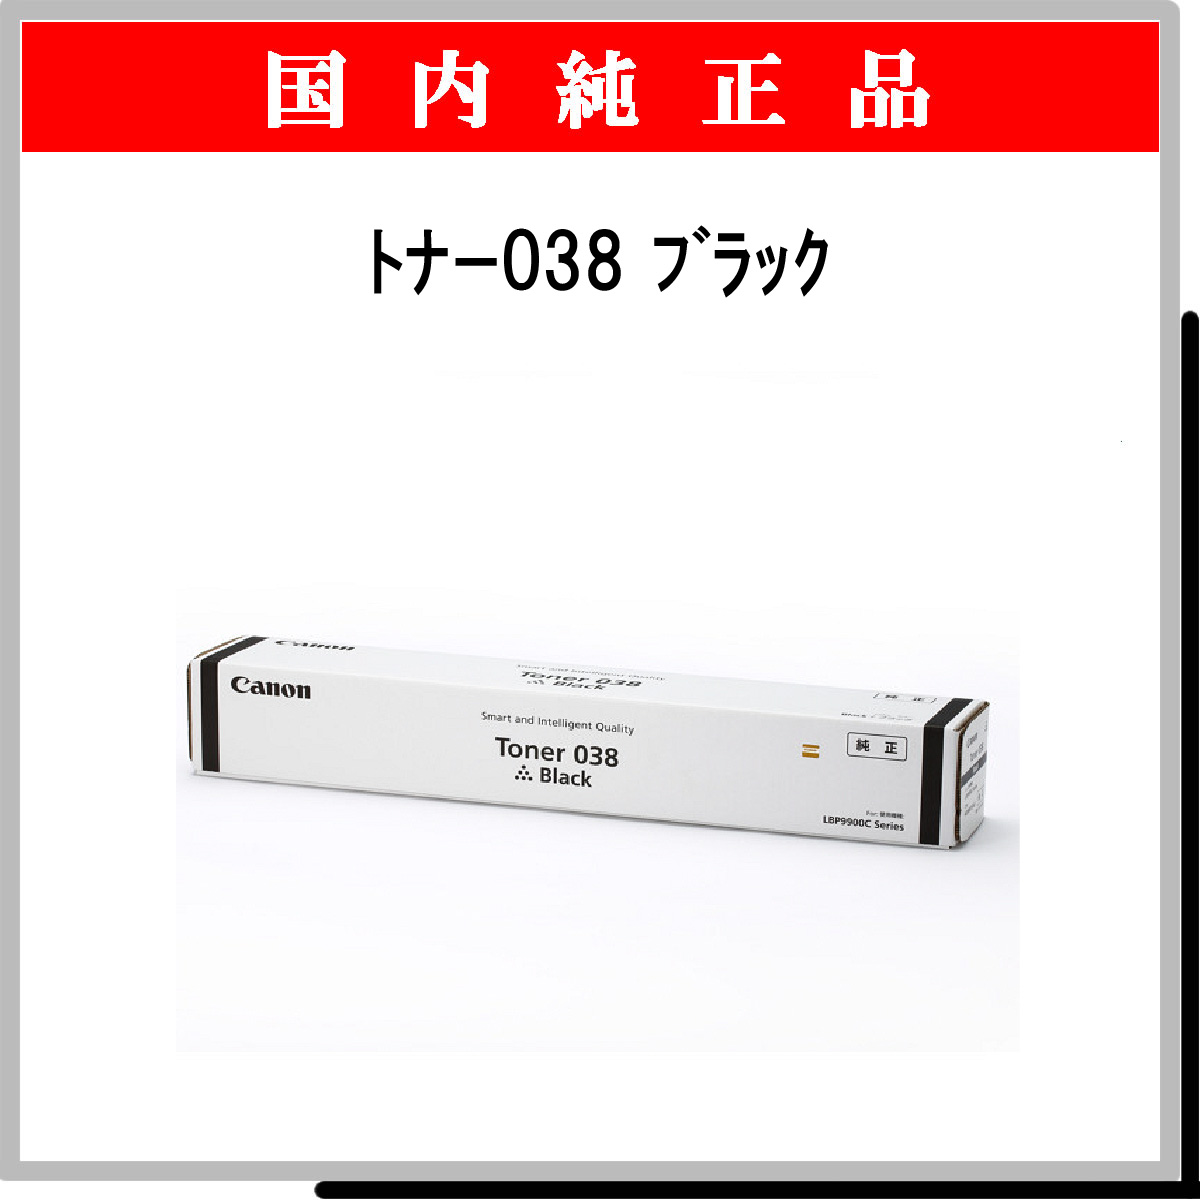 トナー038 リサイクルトナー 【ブラック】 キヤノン プリンター・FAX用インク